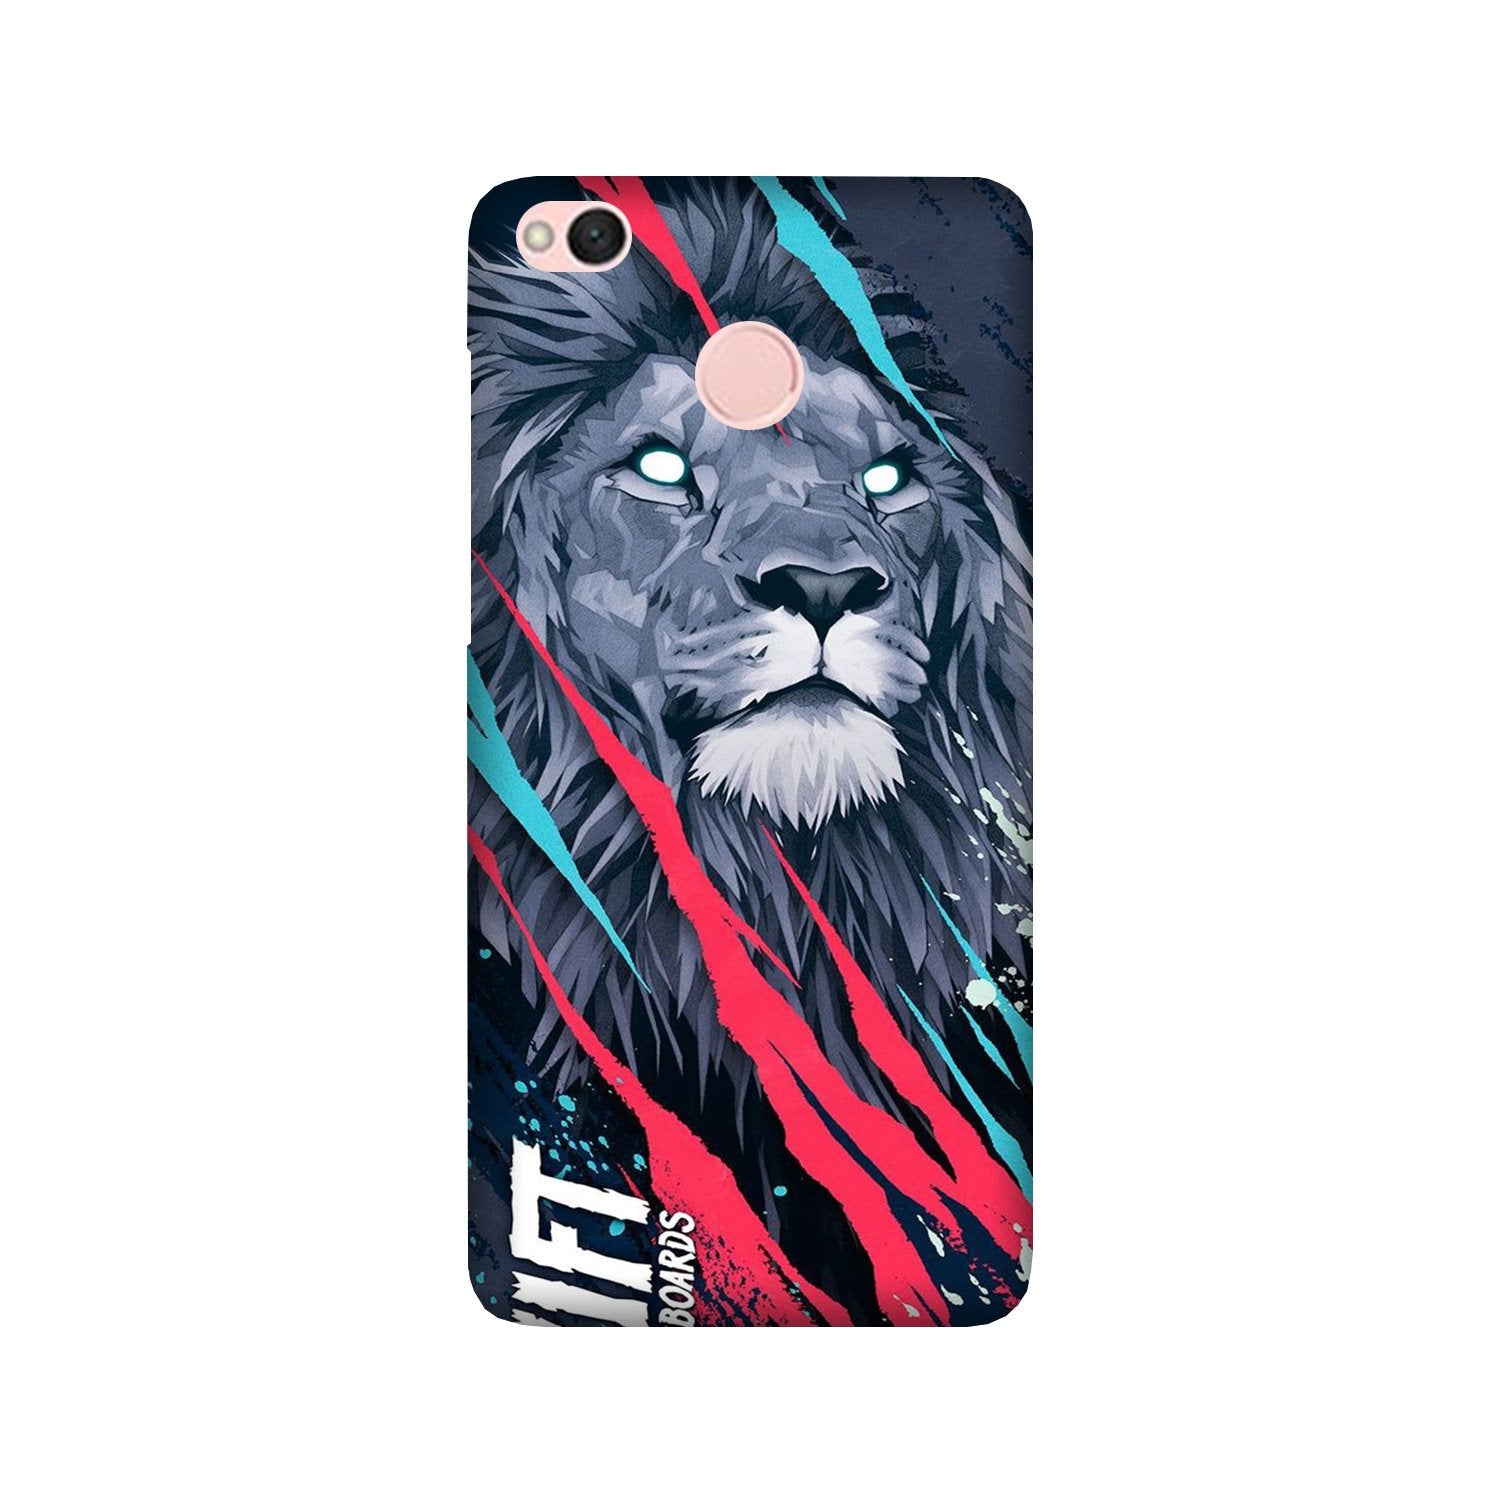 Lion Case for Redmi 4 (Design No. 278)